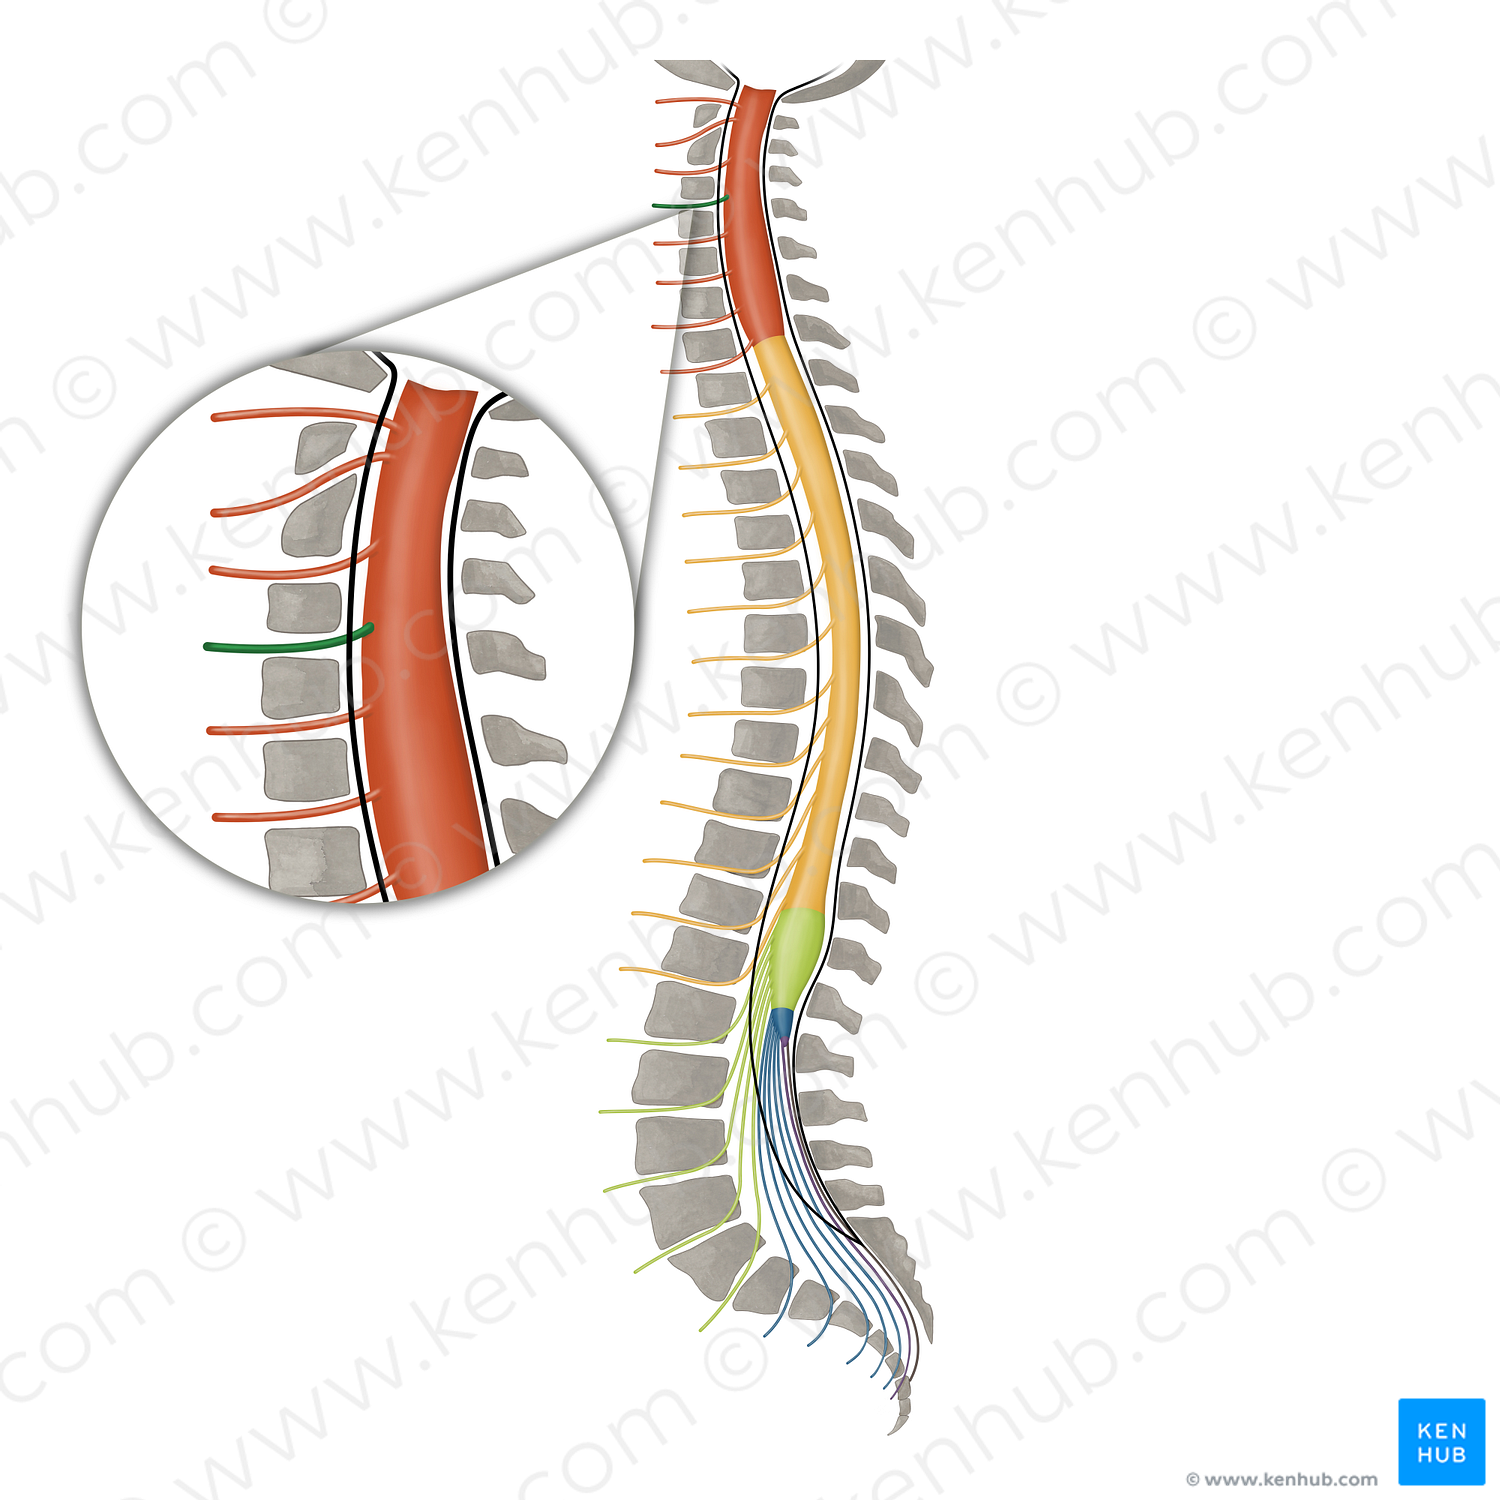 Spinal nerve C4 (#16092)